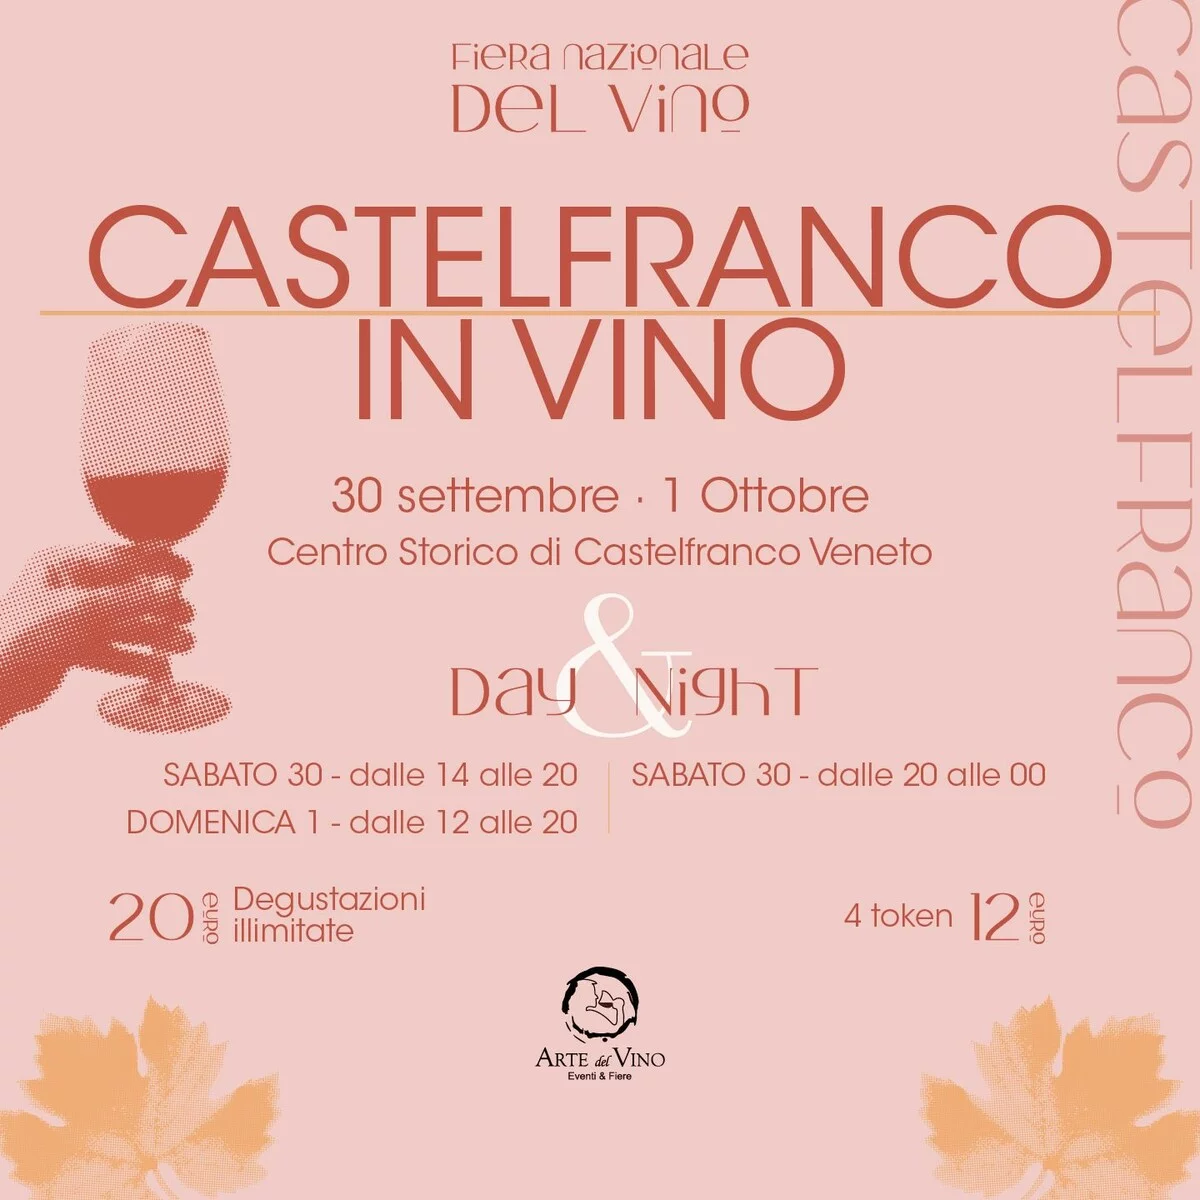 Fiera nazionale del Vino - Castelfranco in vino